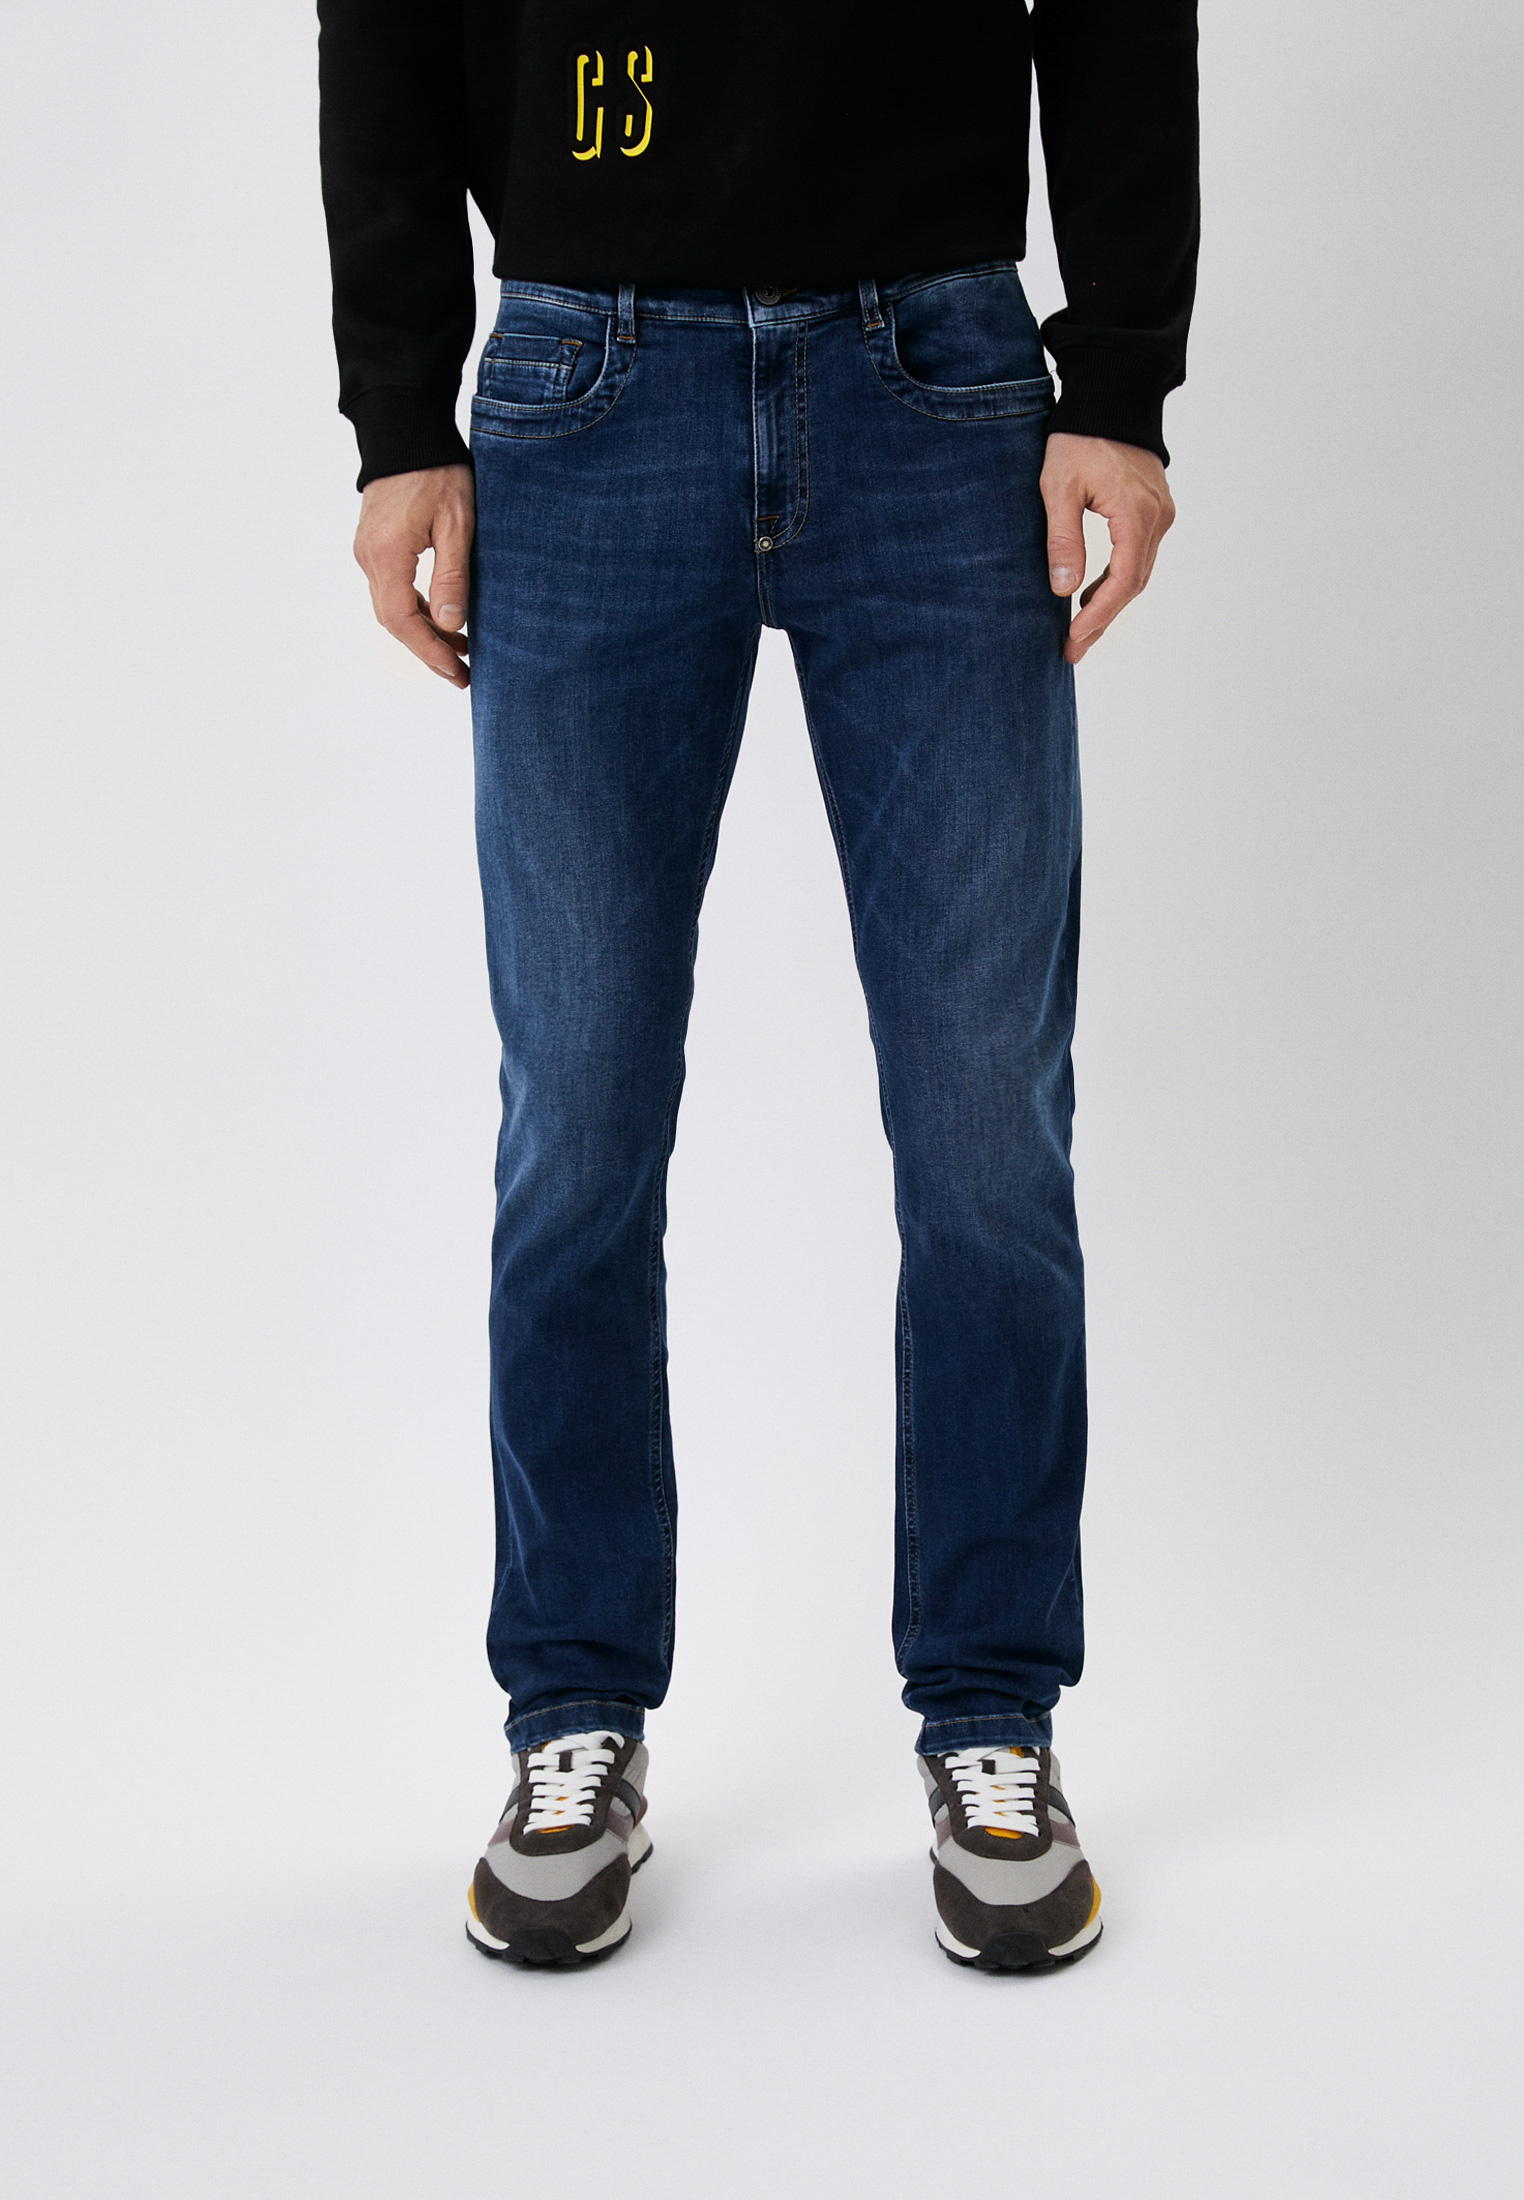 Мужские прямые джинсы Bikkembergs (Биккембергс) C Q 101 1B S 3511: изображение 1